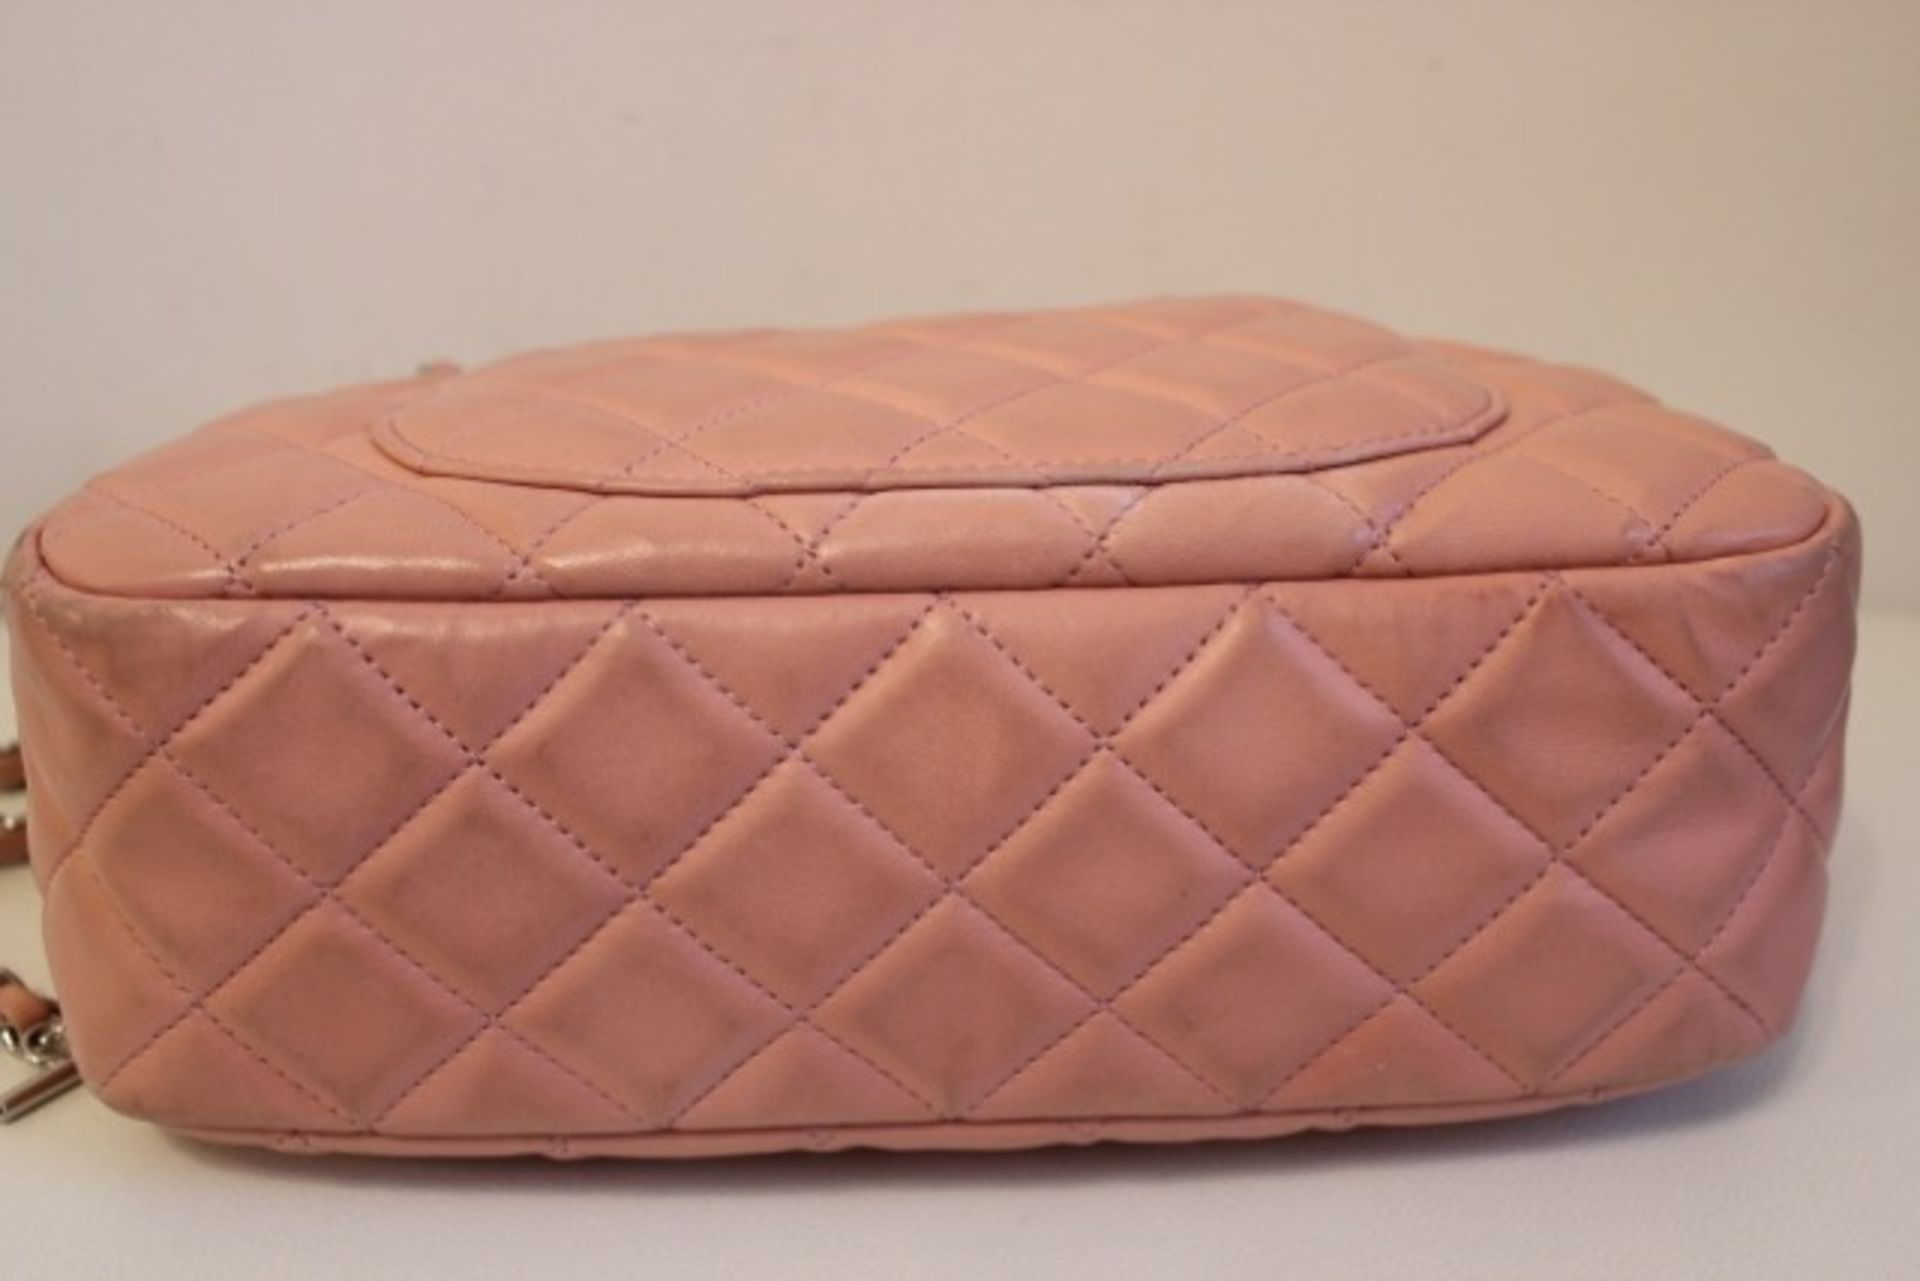 CHANEL Shoulder Bag - Pale Pink Lambskin Leather Silver Hardware - Image 3 of 22